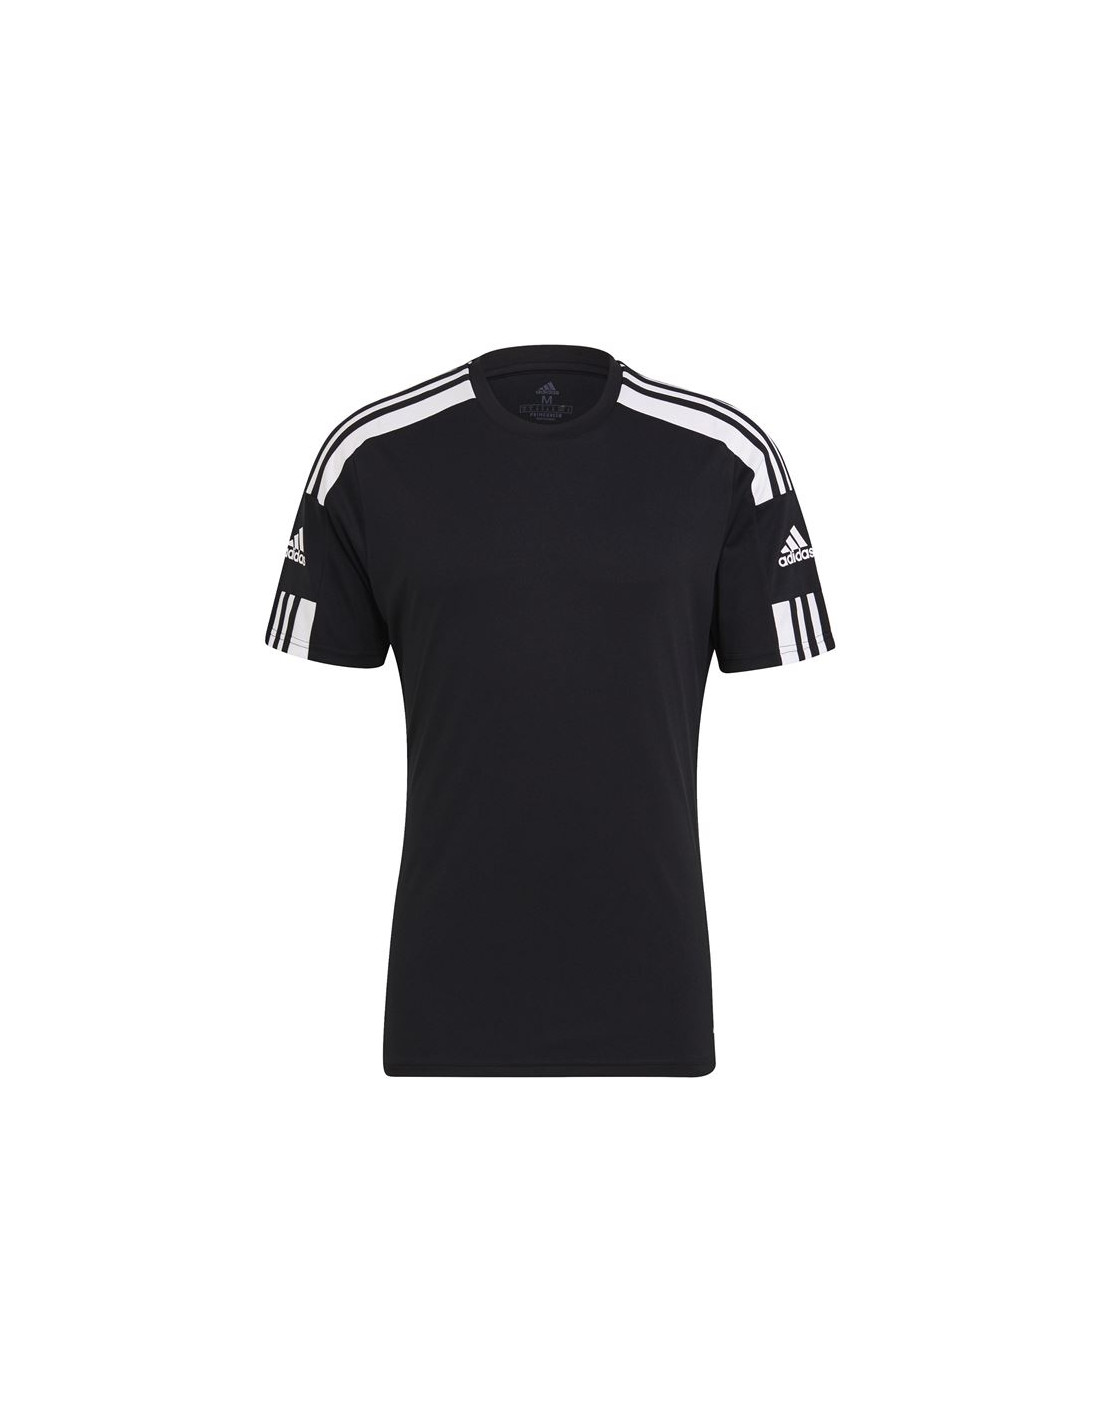 Camiseta de fútbol adidas squadra 21 m black